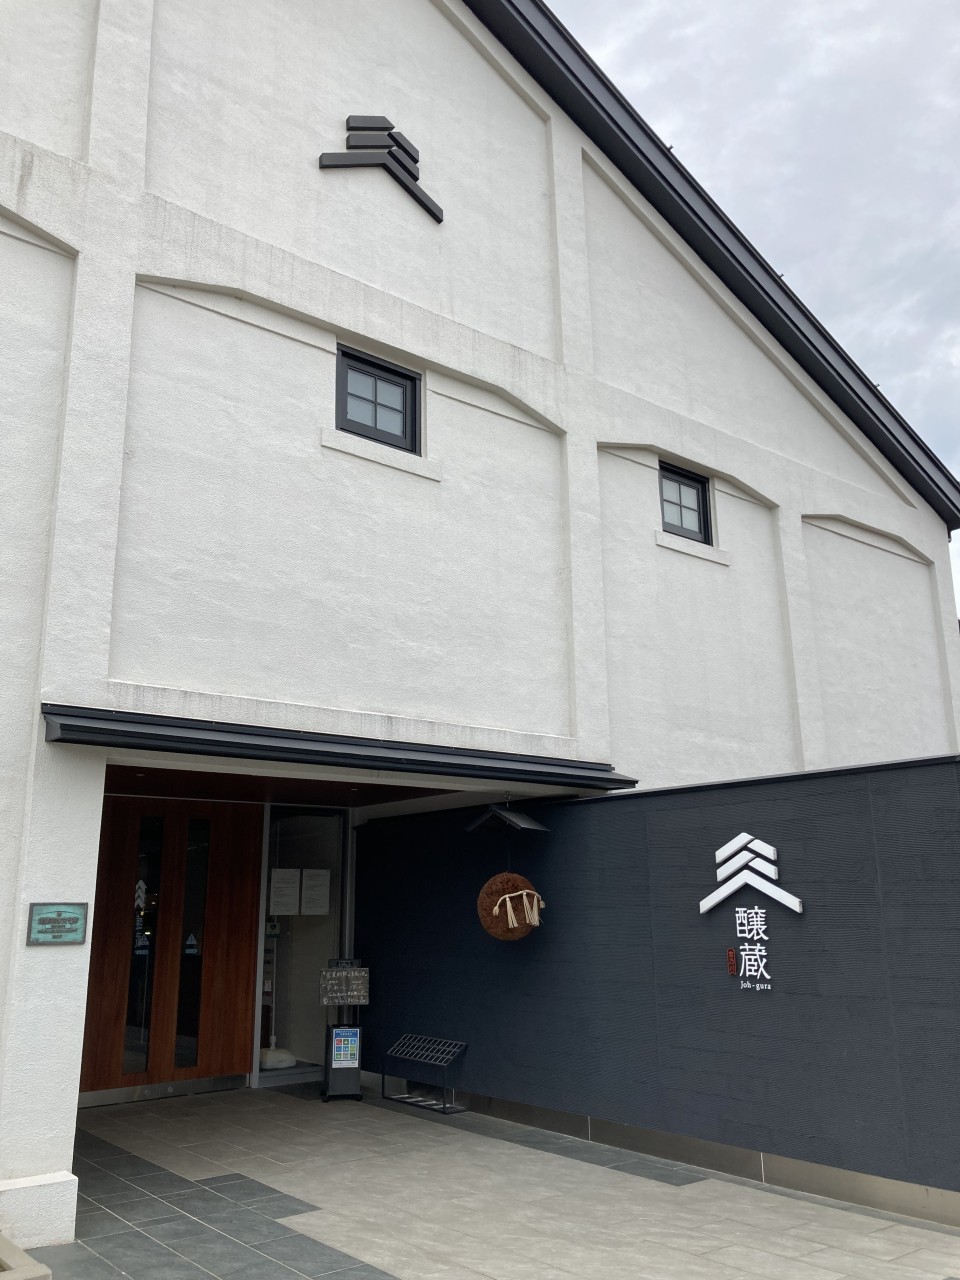 Go to Niigata to enjoy sake at Yoshinogawa, a long-established sake brewery in the brewing town of Setagaya, the oldest sake brewery in Niigata.